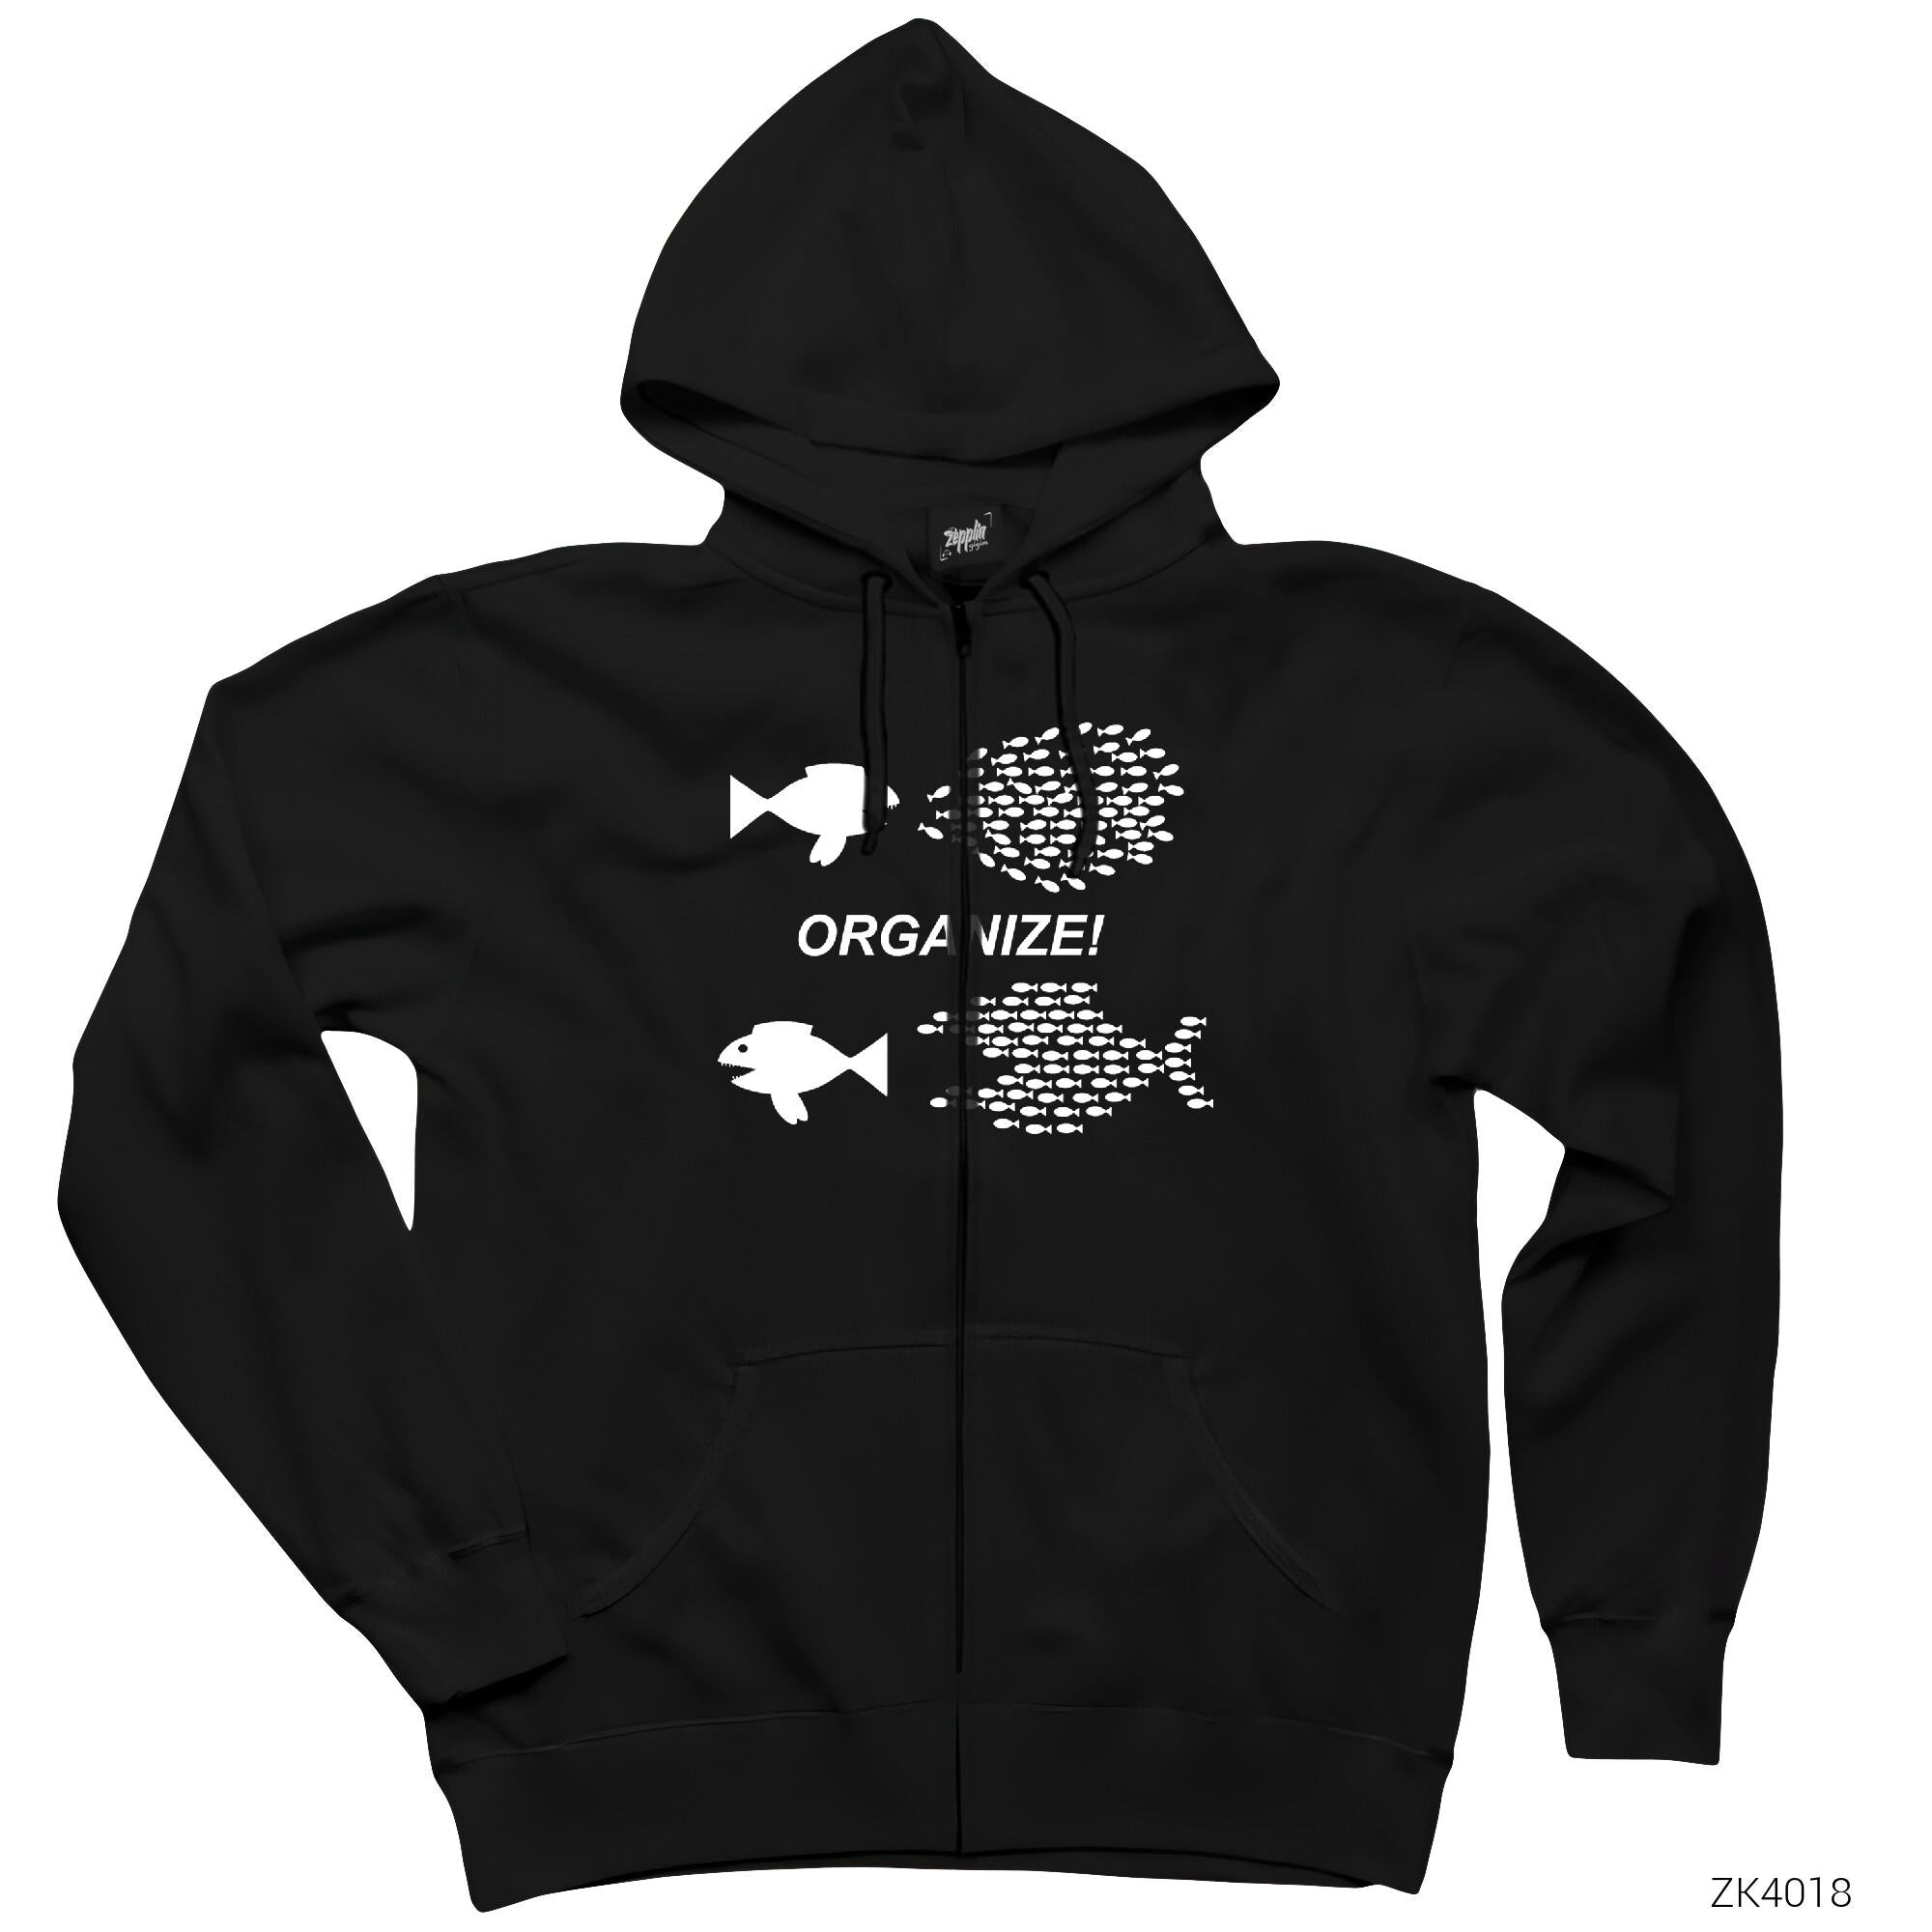 Balık Organize Siyah Fermuarlı Kapşonlu Sweatshirt